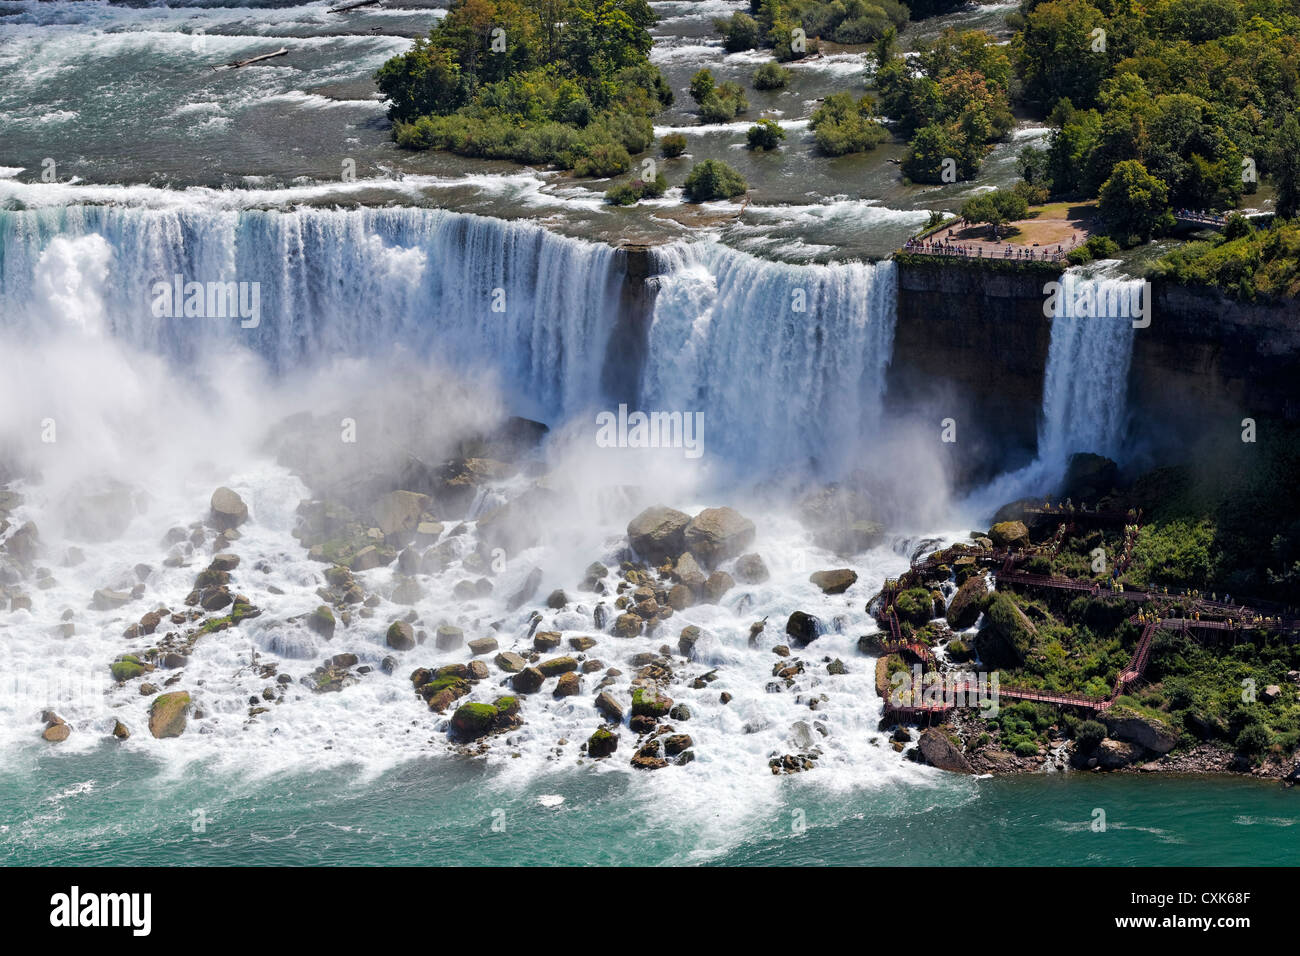 Les visiteurs à l'American Falls, Niagara Falls, New York Banque D'Images